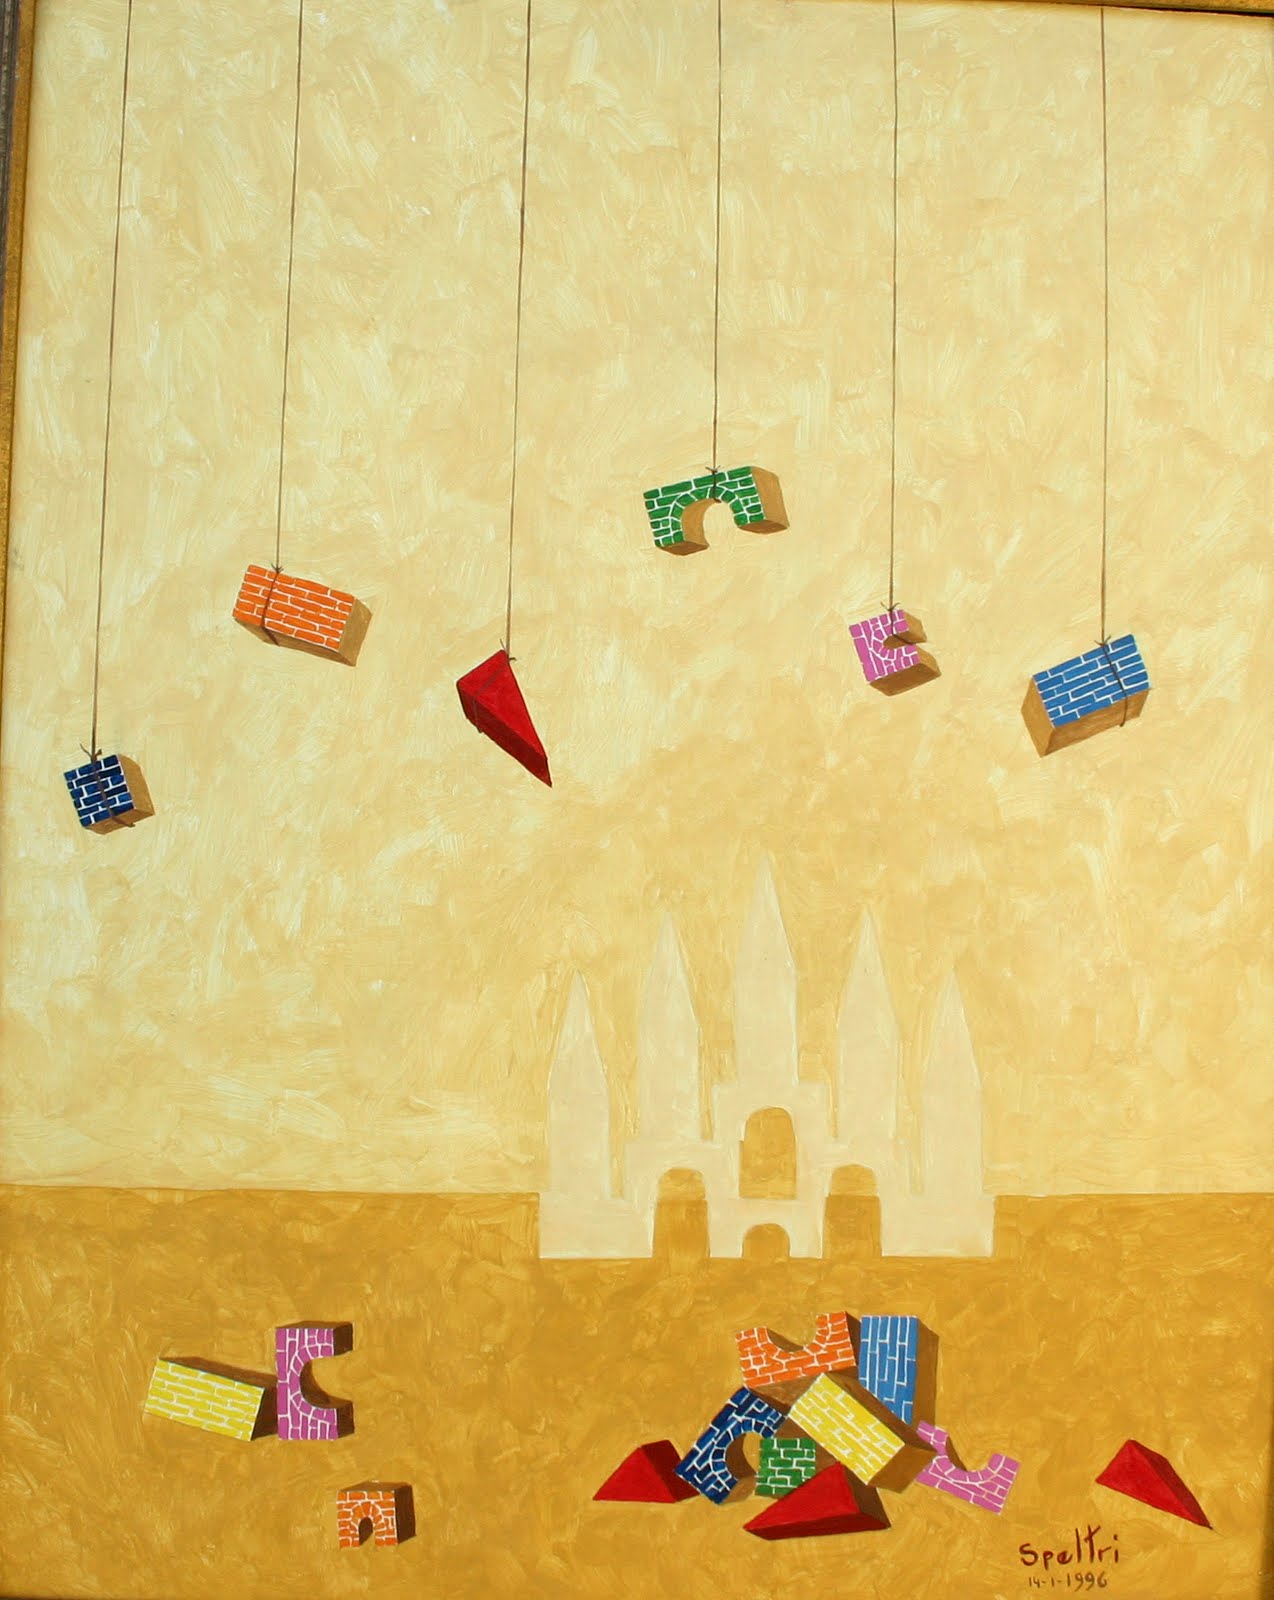 Trem colorido de brinquedo infantil com ilustração de aquarela de fumaça  isolado em um transparente